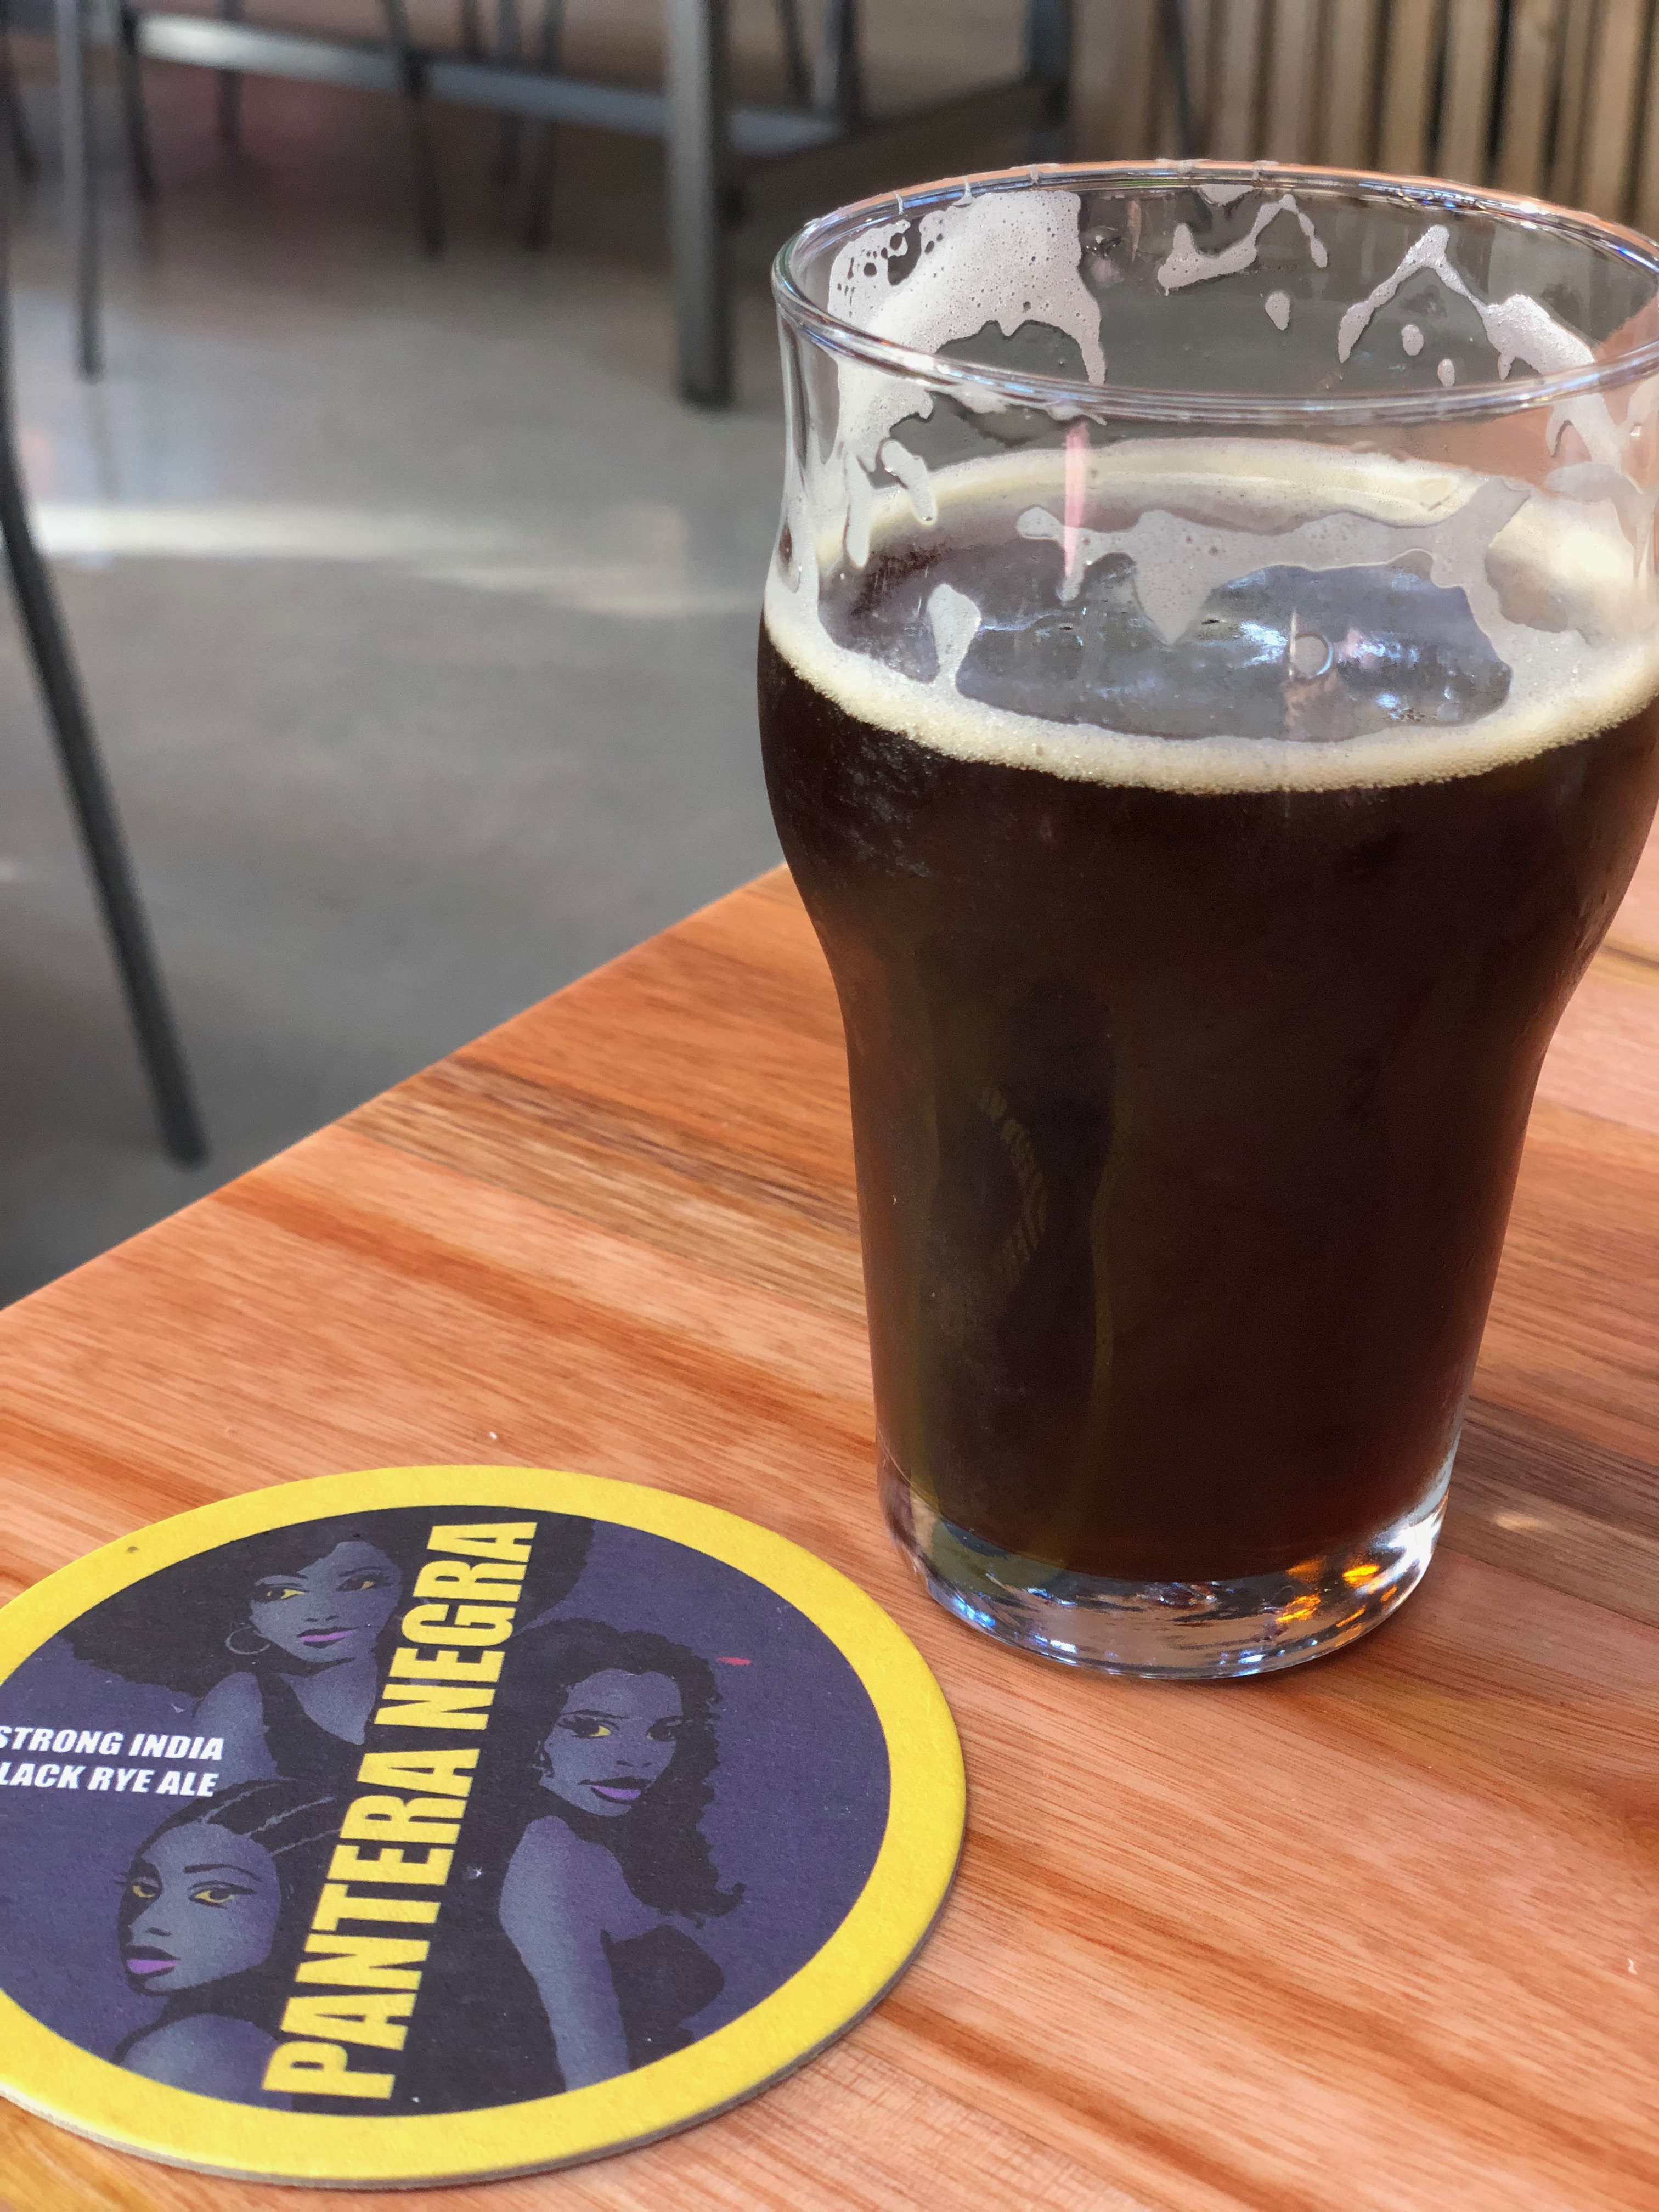 Pantera Negra é uma cerveja feita com centeio e produzida pela Cervejaria Trinca - Foto: Gleison Barreto Salin/Cerveja e Gastronomia